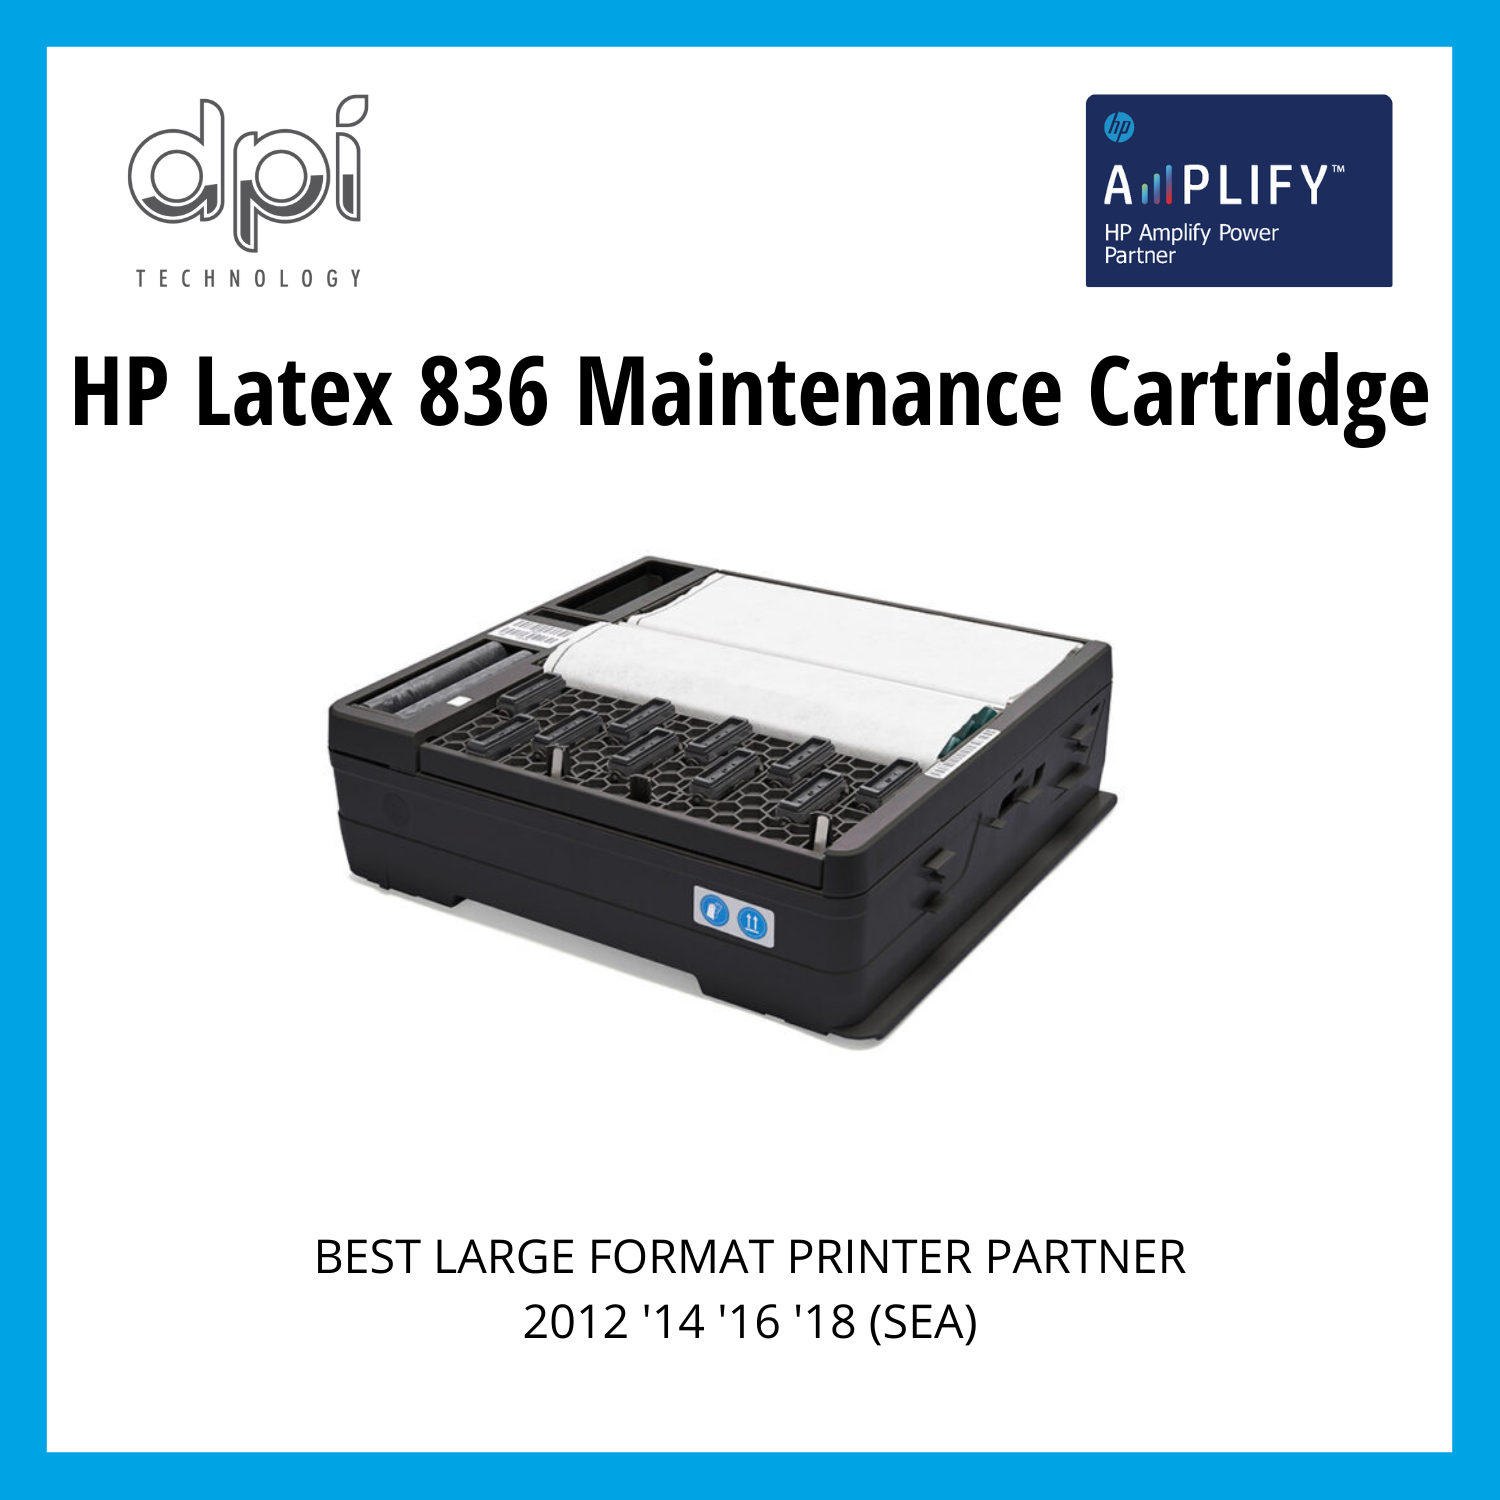 HP Latex 836 Maintenance Cartridge